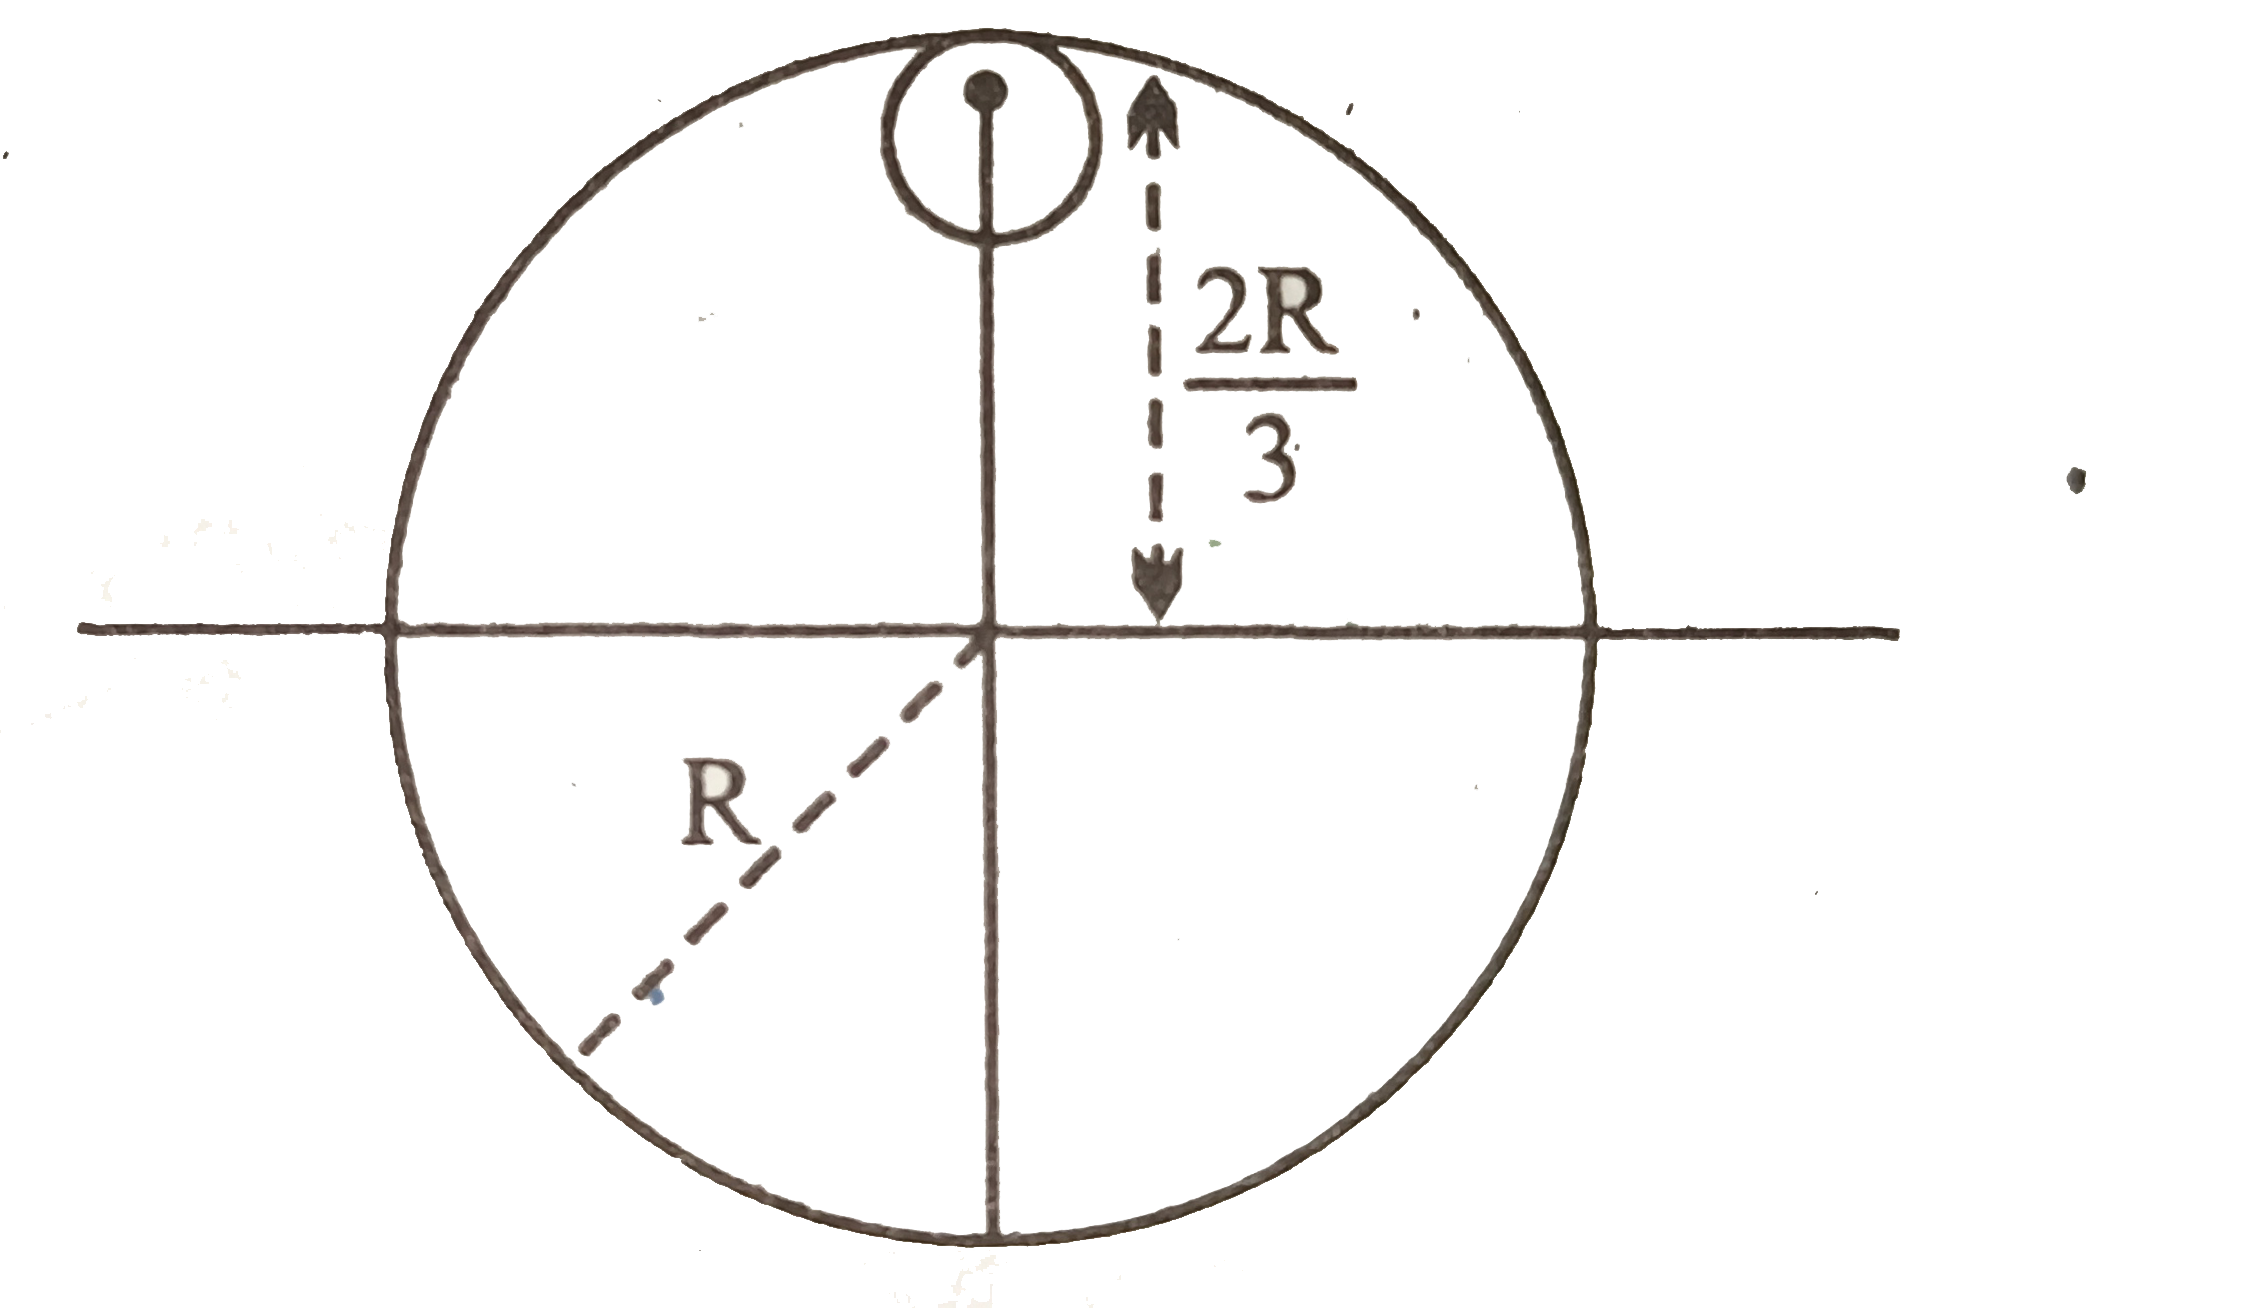 R त्रिज्या तथा 9M द्रव्यमान की एकसमान चकती से (R)/(3) त्रिज्या की छोटी चकती के चित्र में दर्शाए अनुसार काट लिया जाता है । शेष चकती का इसके तल के लंबवत तथा केंद्र से गुजरने वाले अक्ष के परितः जड़त्व आघूर्ण होगा -